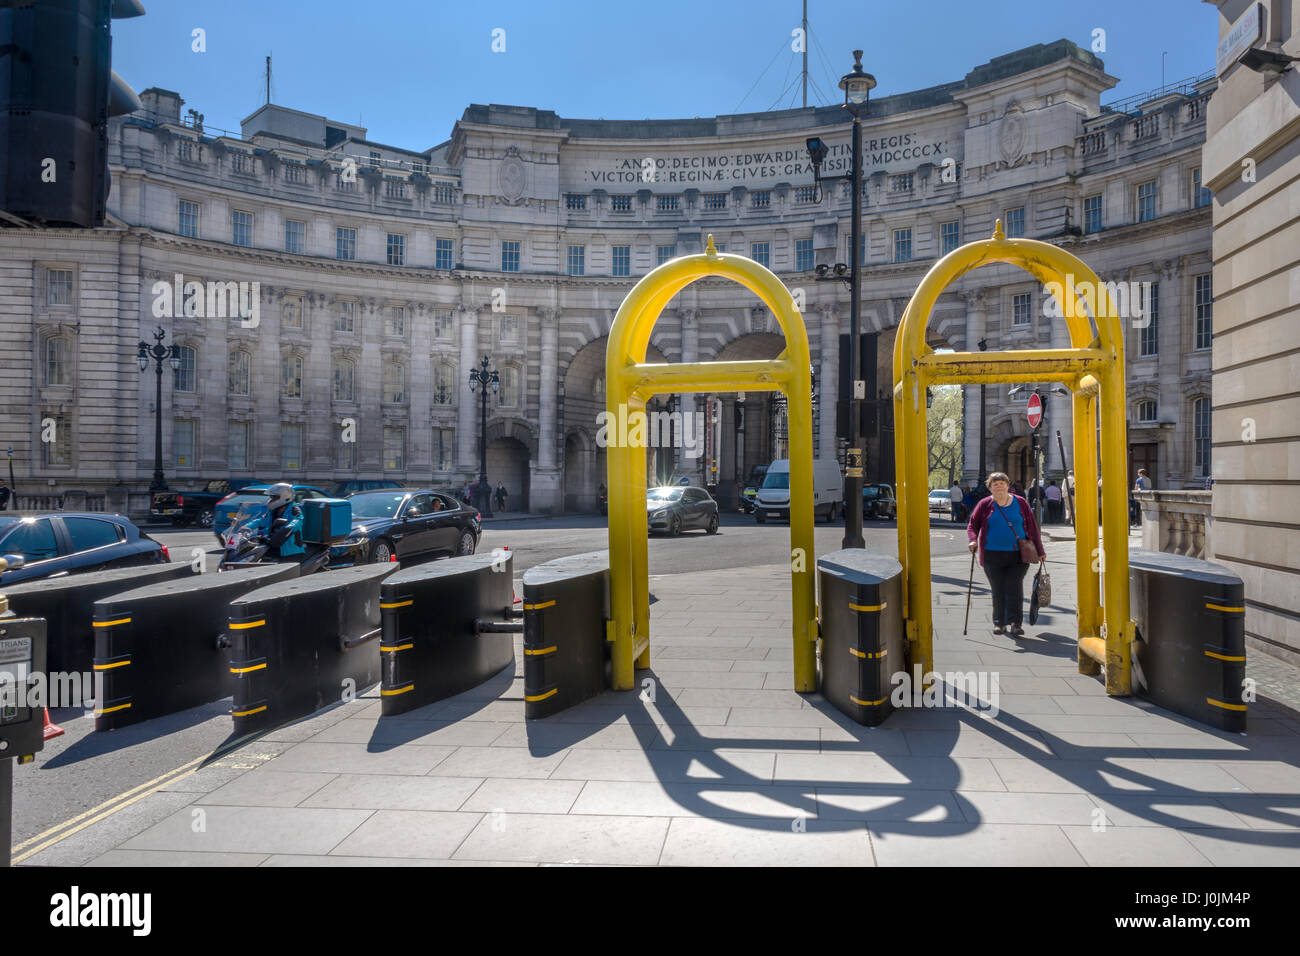 L'impressionnant obstacles anti-terreur situé en dehors de l'Admiralty Arch sur le Mall, près de Trafalgar Square, au centre de Londres, Angleterre. Banque D'Images